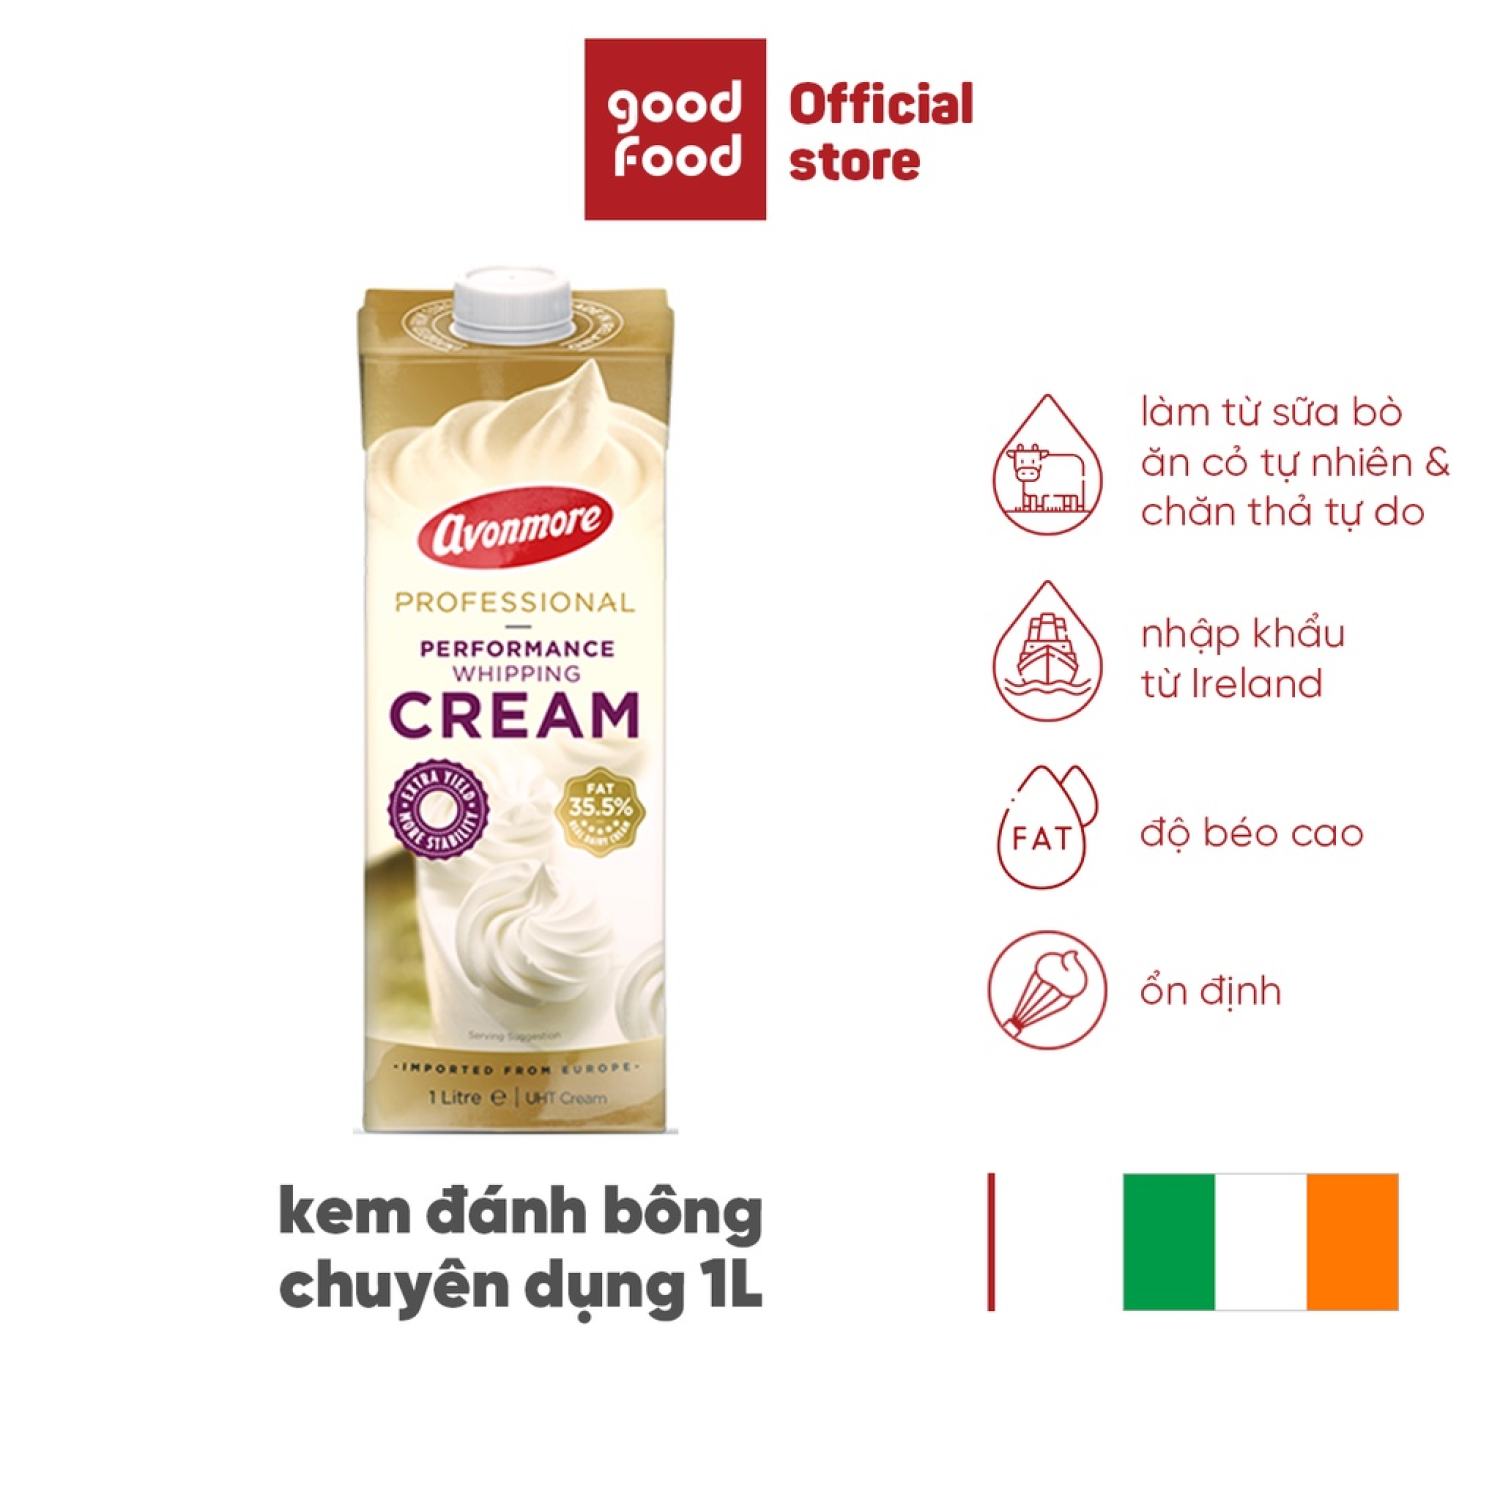 Kem Đánh Bông Avonmore Whipping Cream 1L nhập khẩu trực tiếp từ Ireland